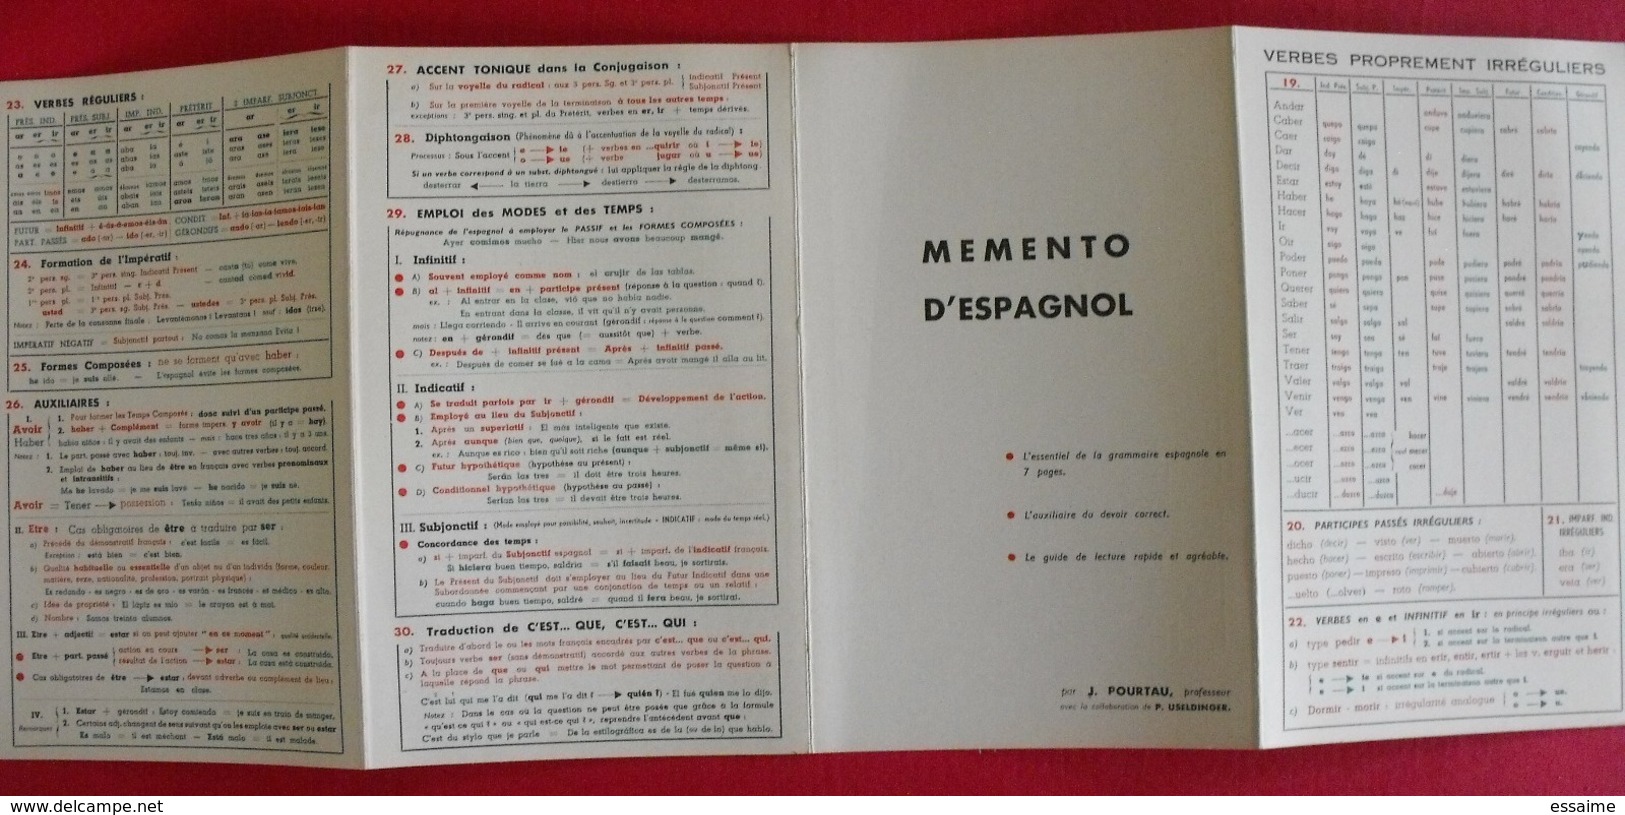 lot de 6 livres livrets scolaires ou autres en Espagnol. espana. espagne. entre 1934 et 1969